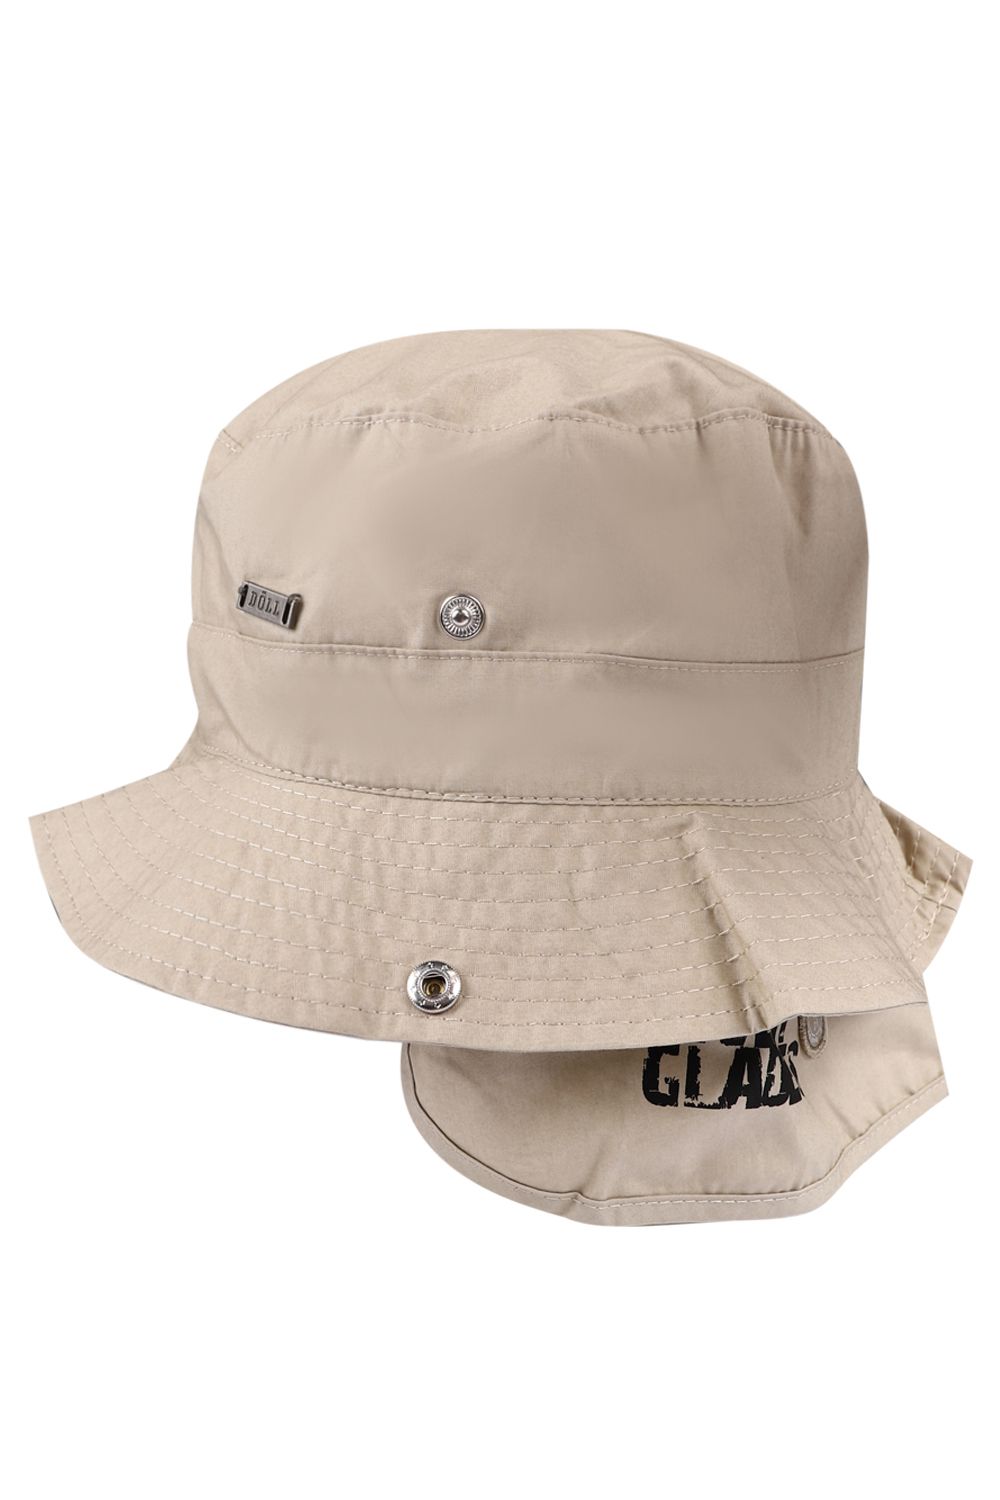 Шляпа Doell, размер 55, цвет бежевый 1939456513/6090 - фото 1